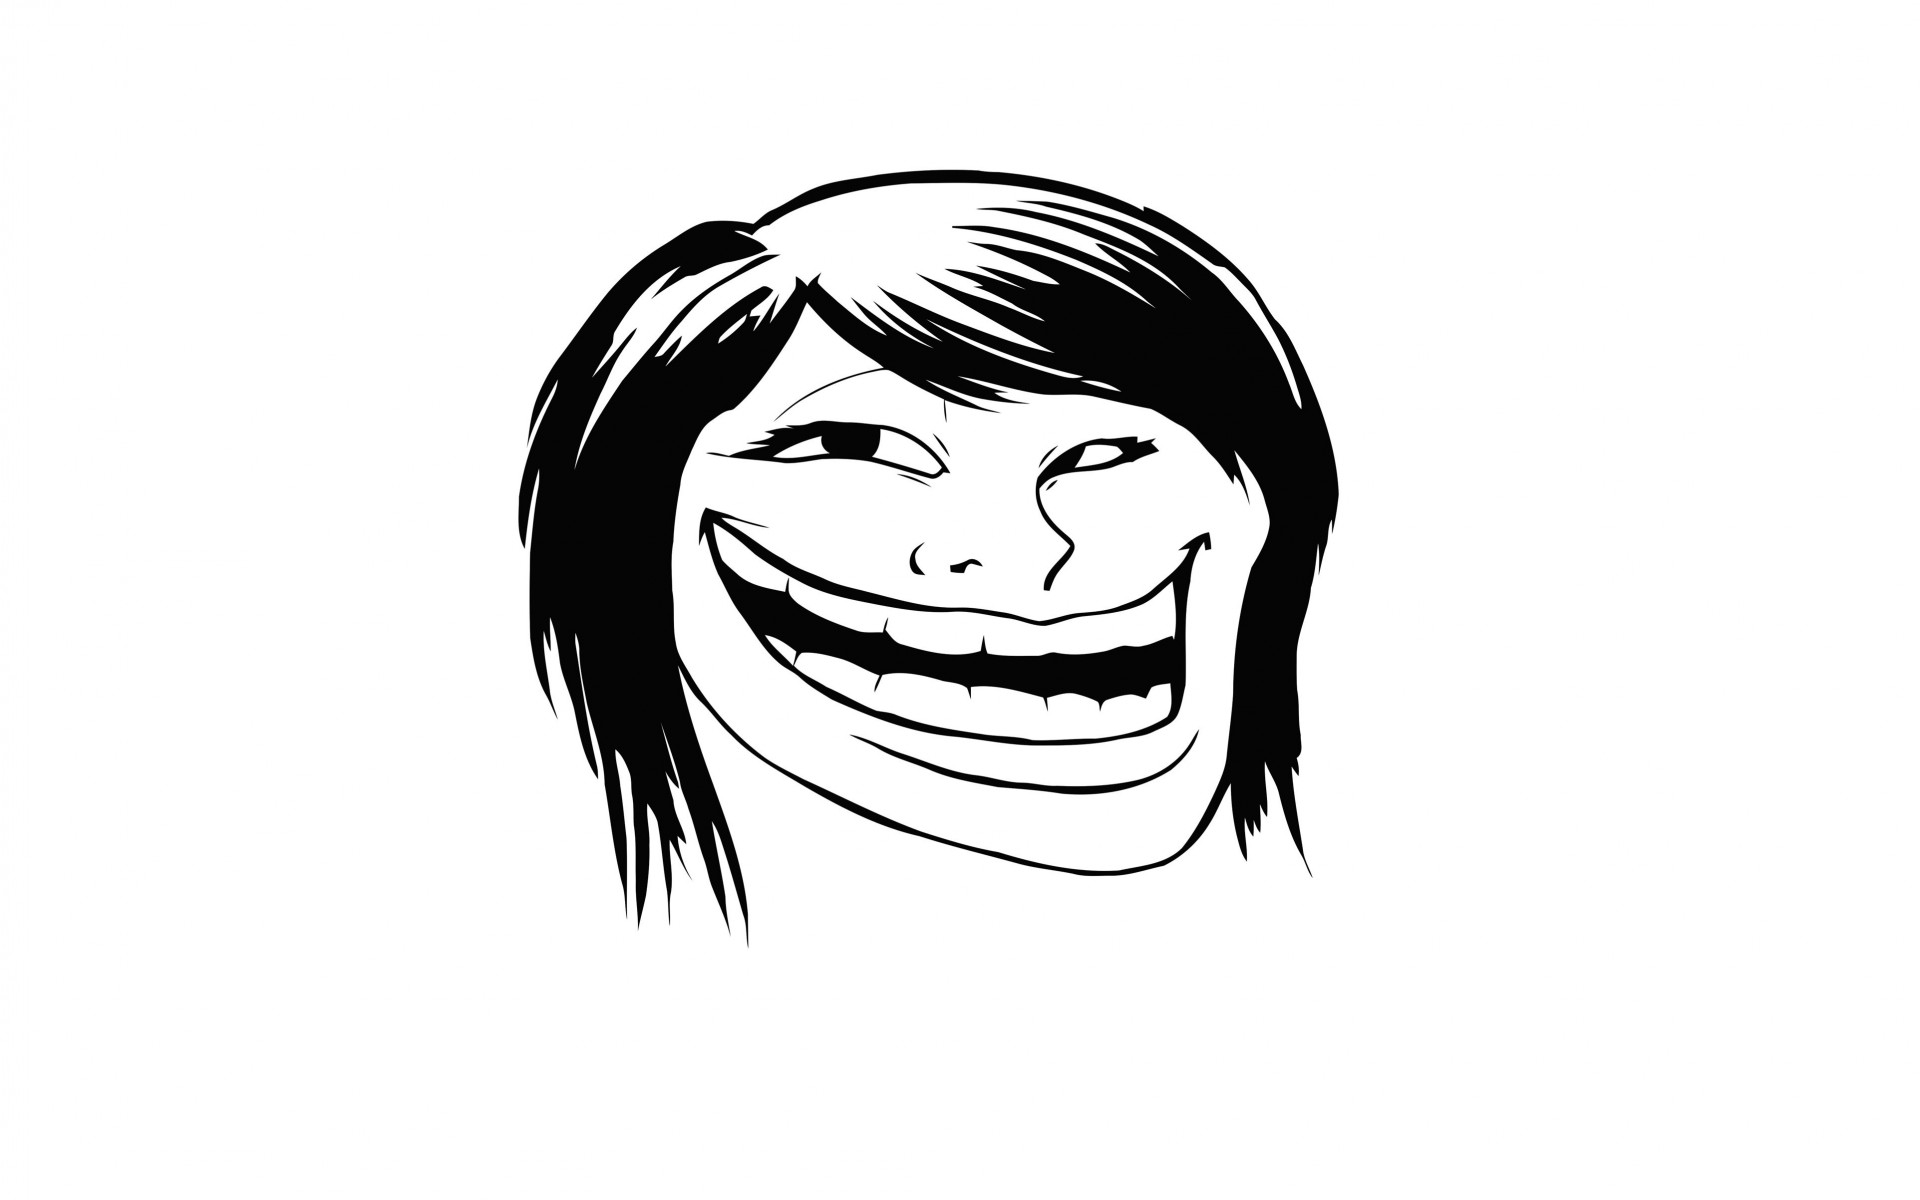 Female Troll Face Meme Wallpaper for Desktop 1920x1200